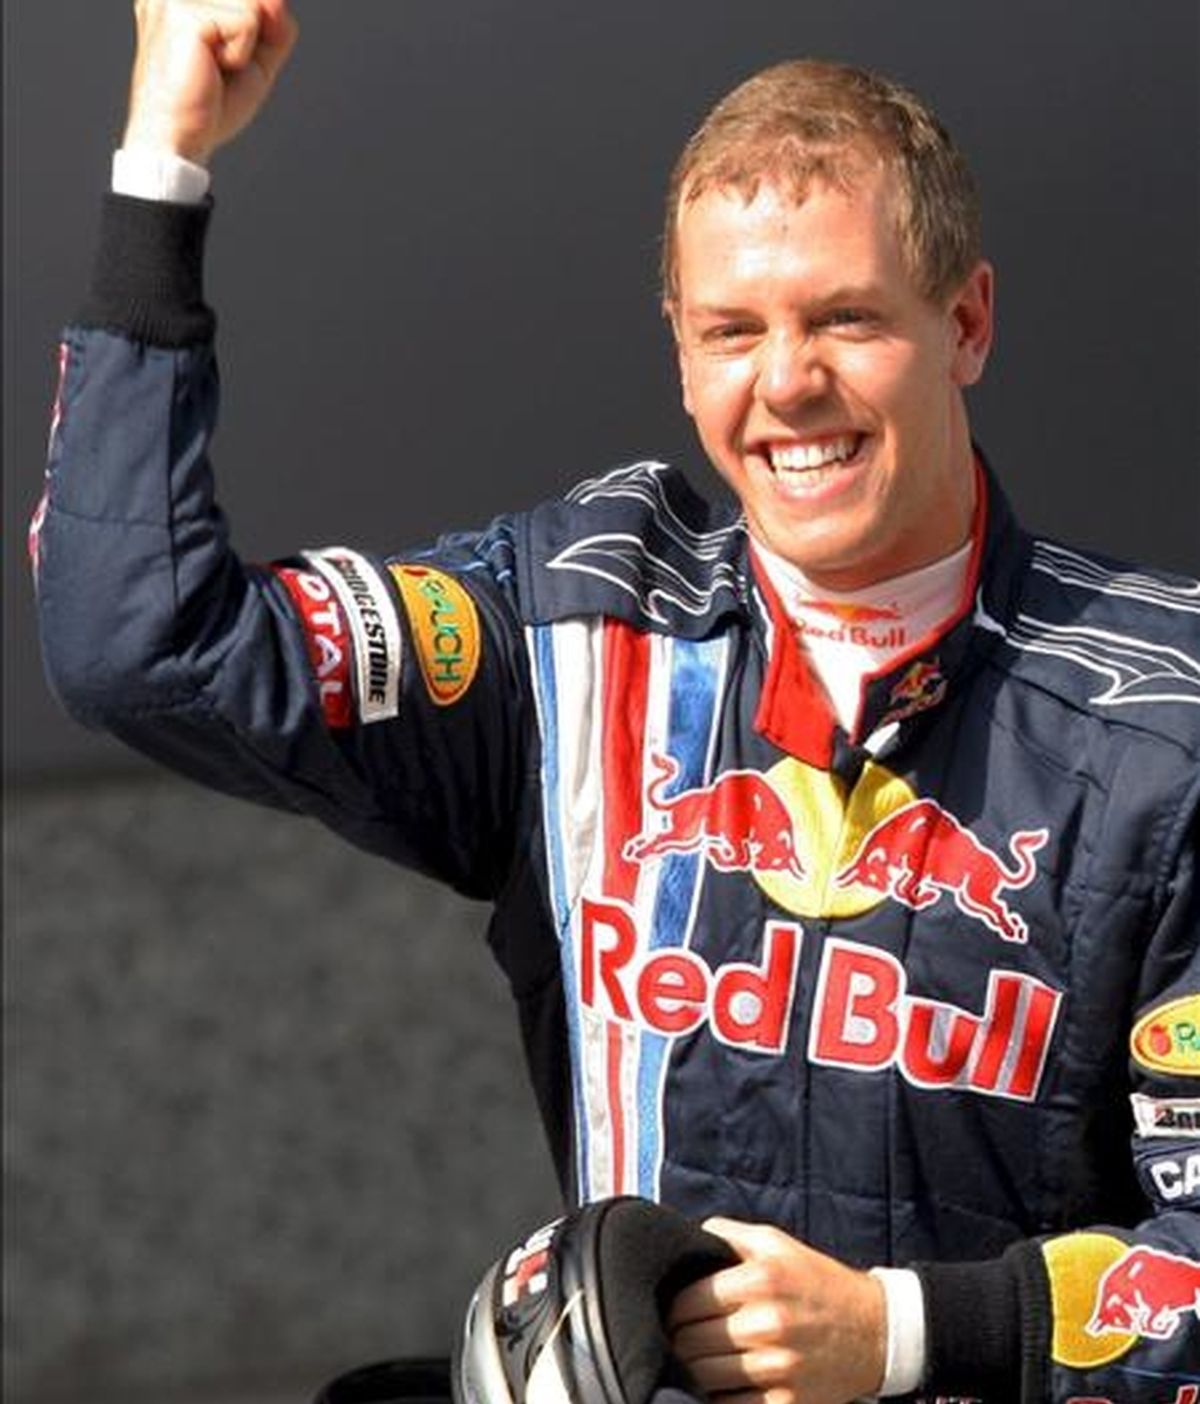 El piloto alemán Sebastian Vettel, de la escudería Red Bull, celebra la 'pole' conseguida en la sesión clasificatoria para el Gran Premio de China de Fórmula Uno, hoy en Shangai. EFE